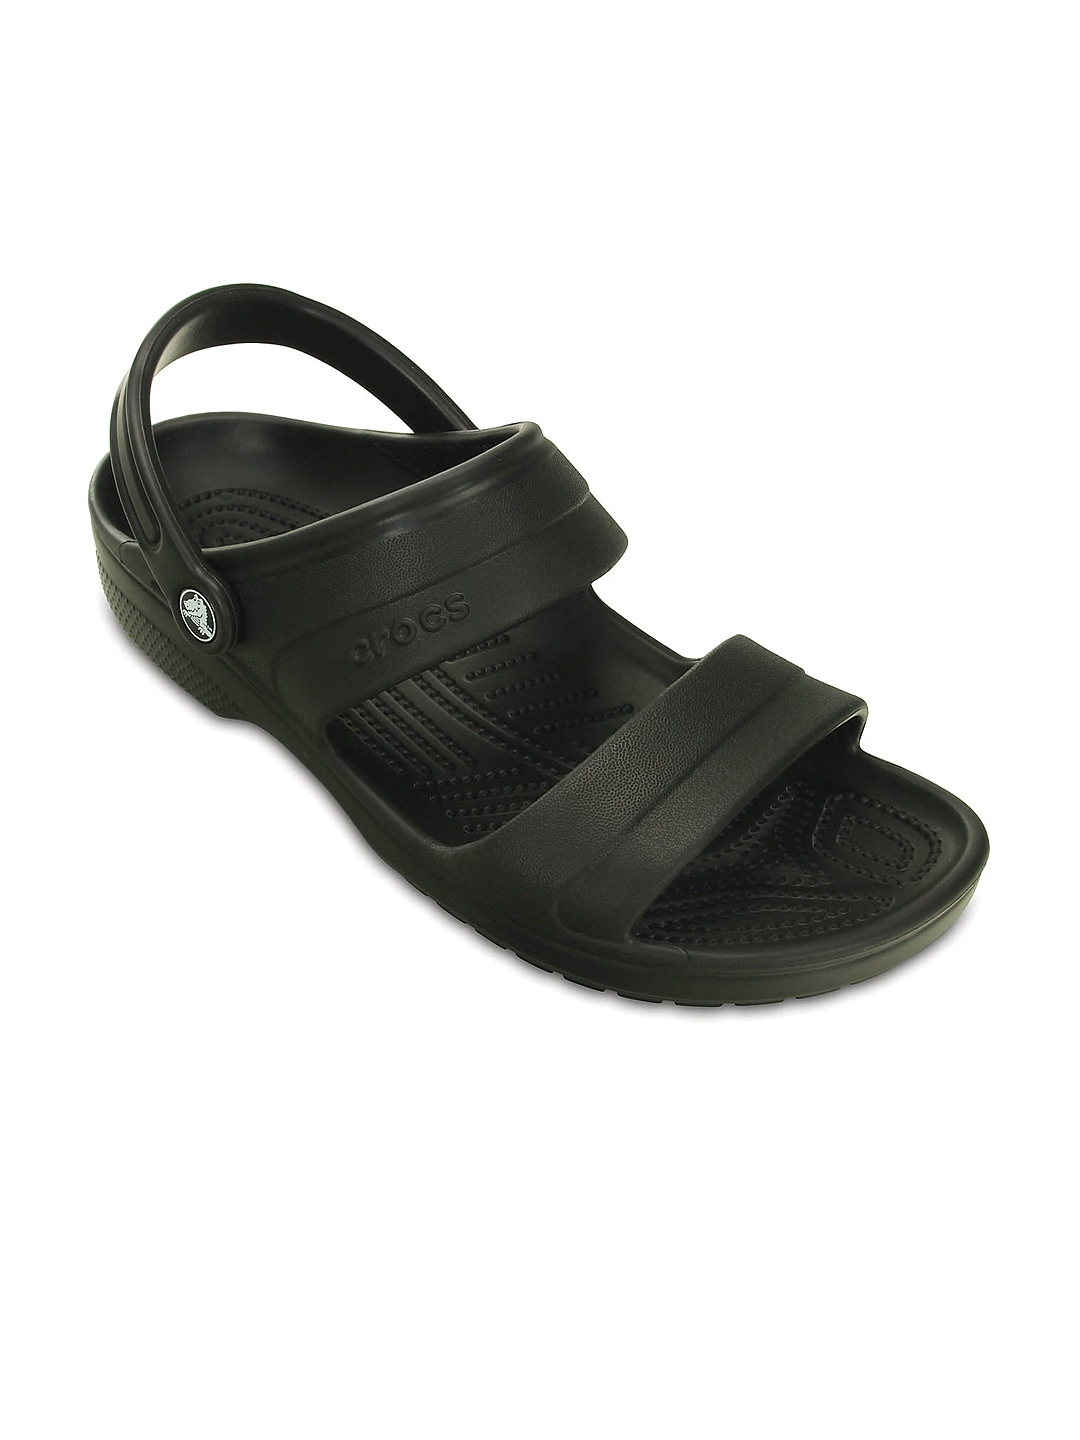 crocs men black sandals